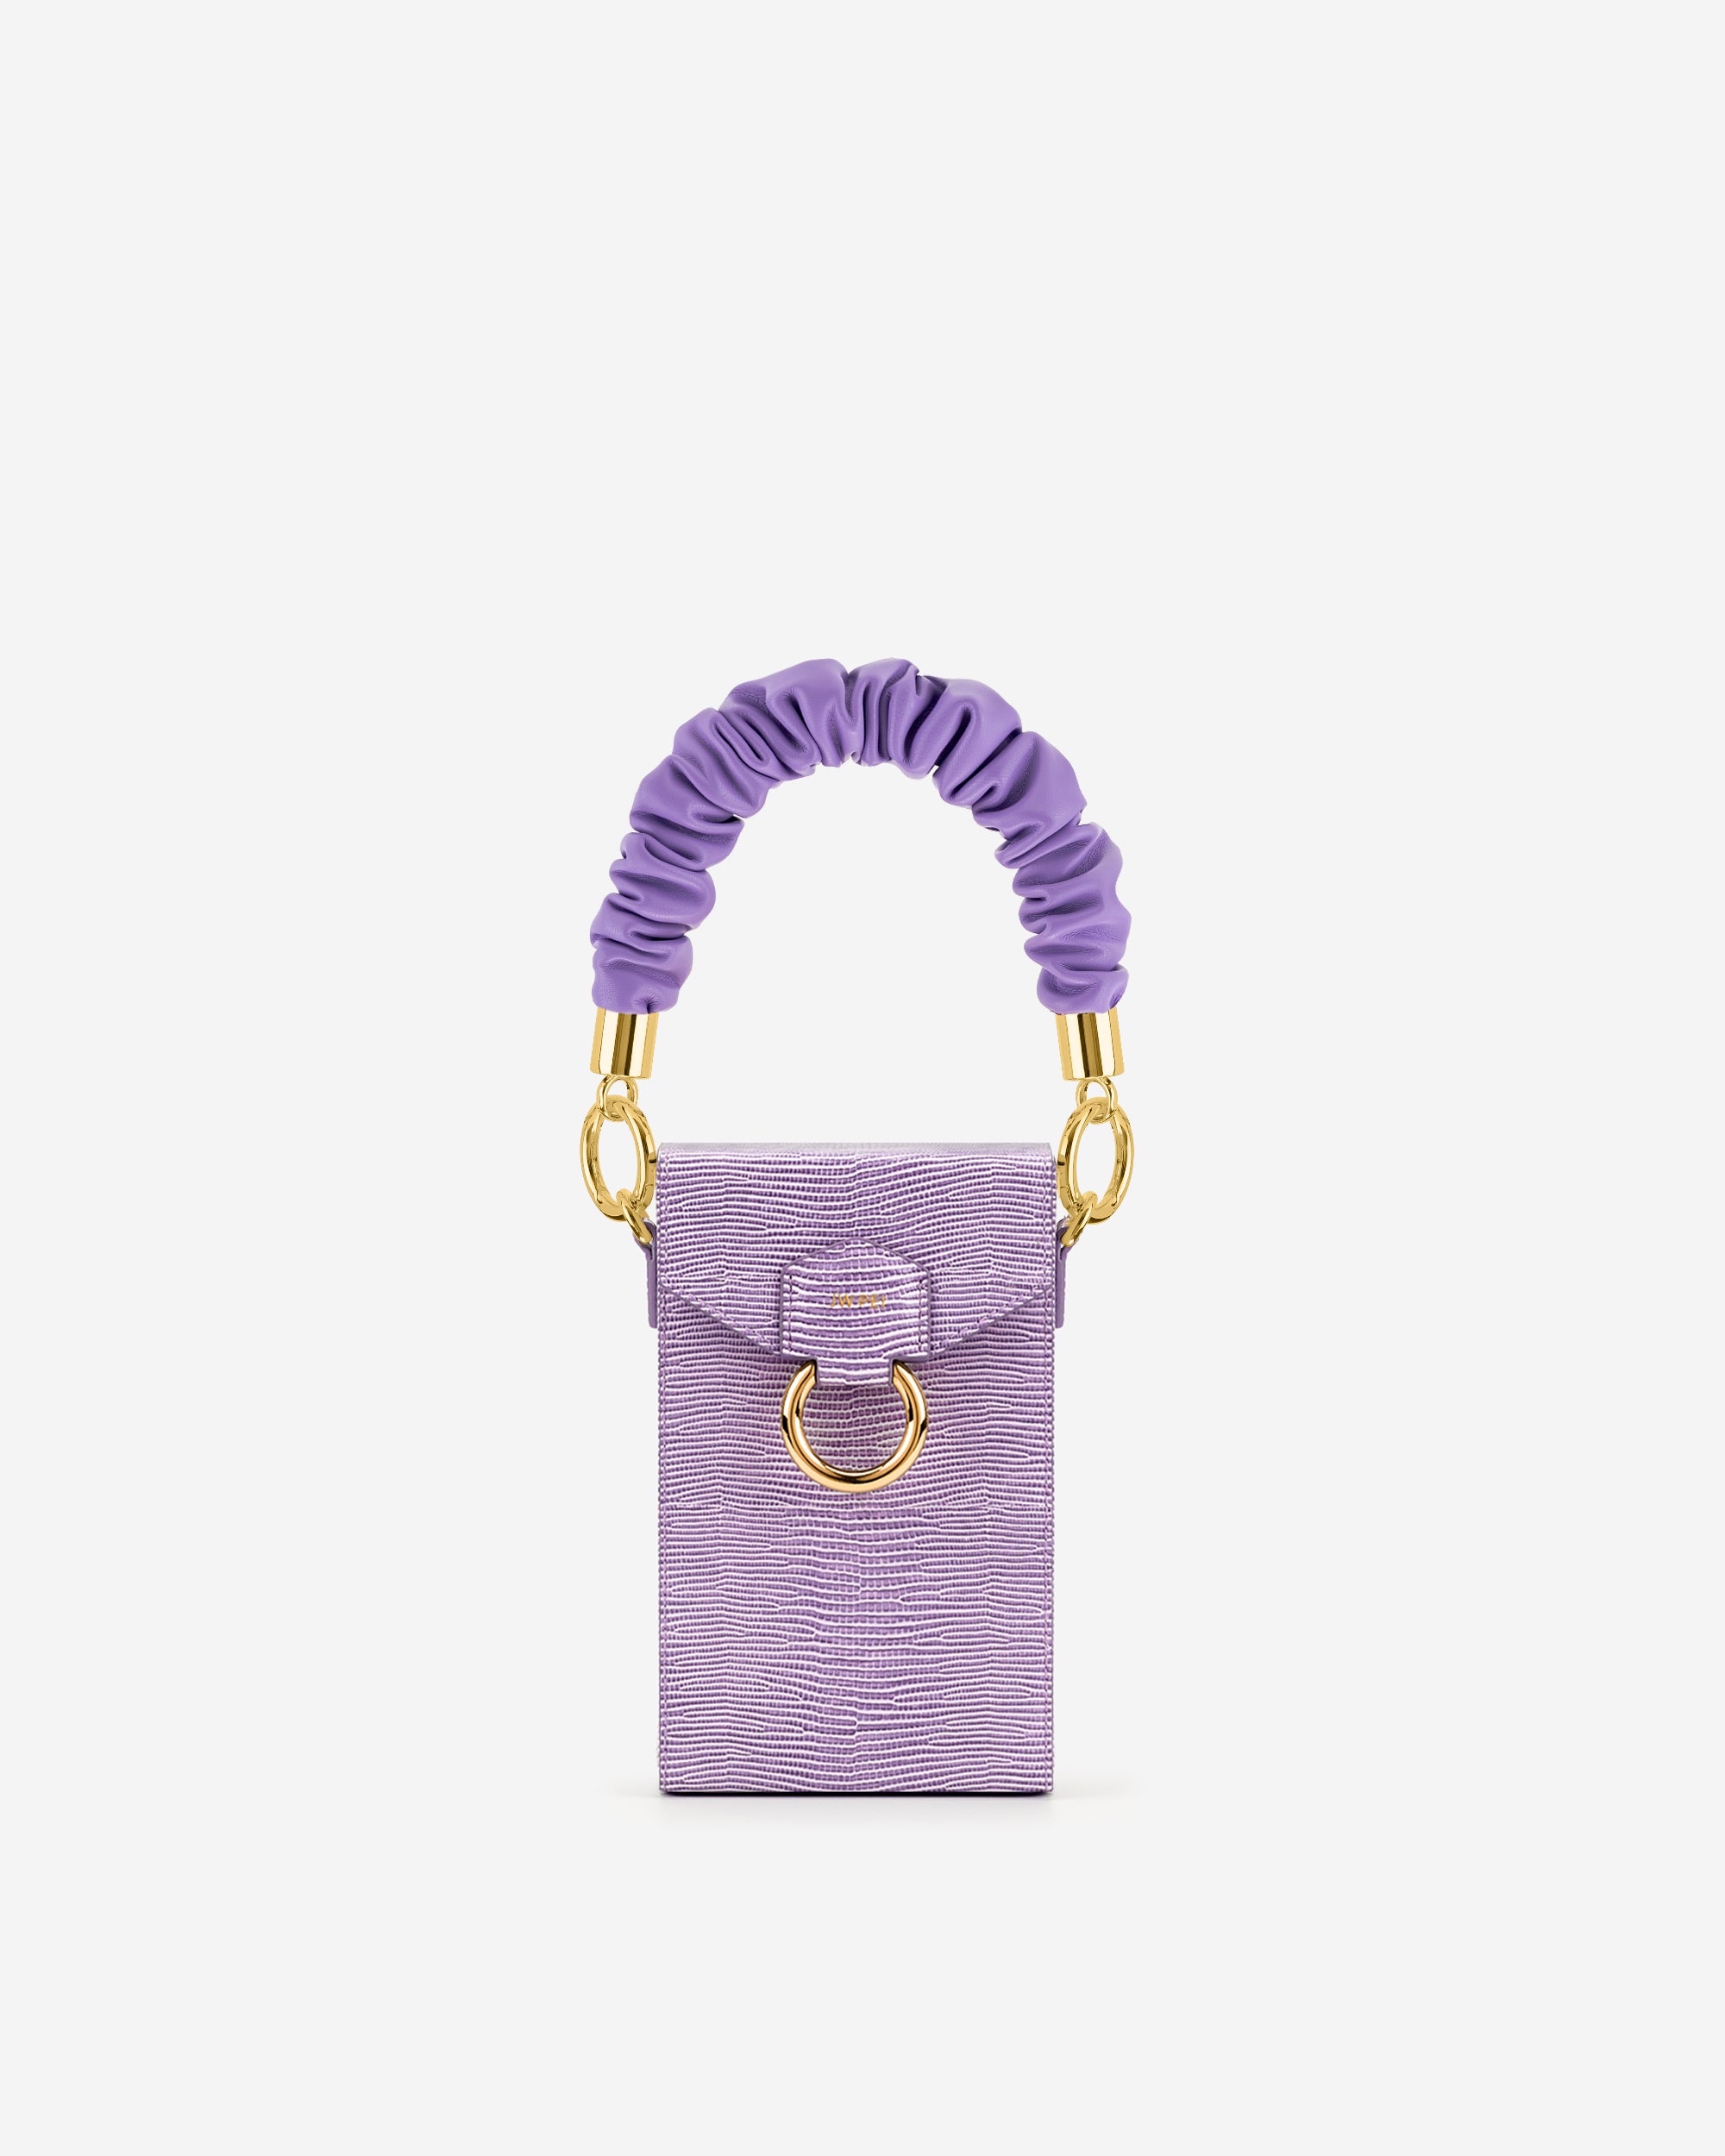 捲邊手提帶 - 紫色